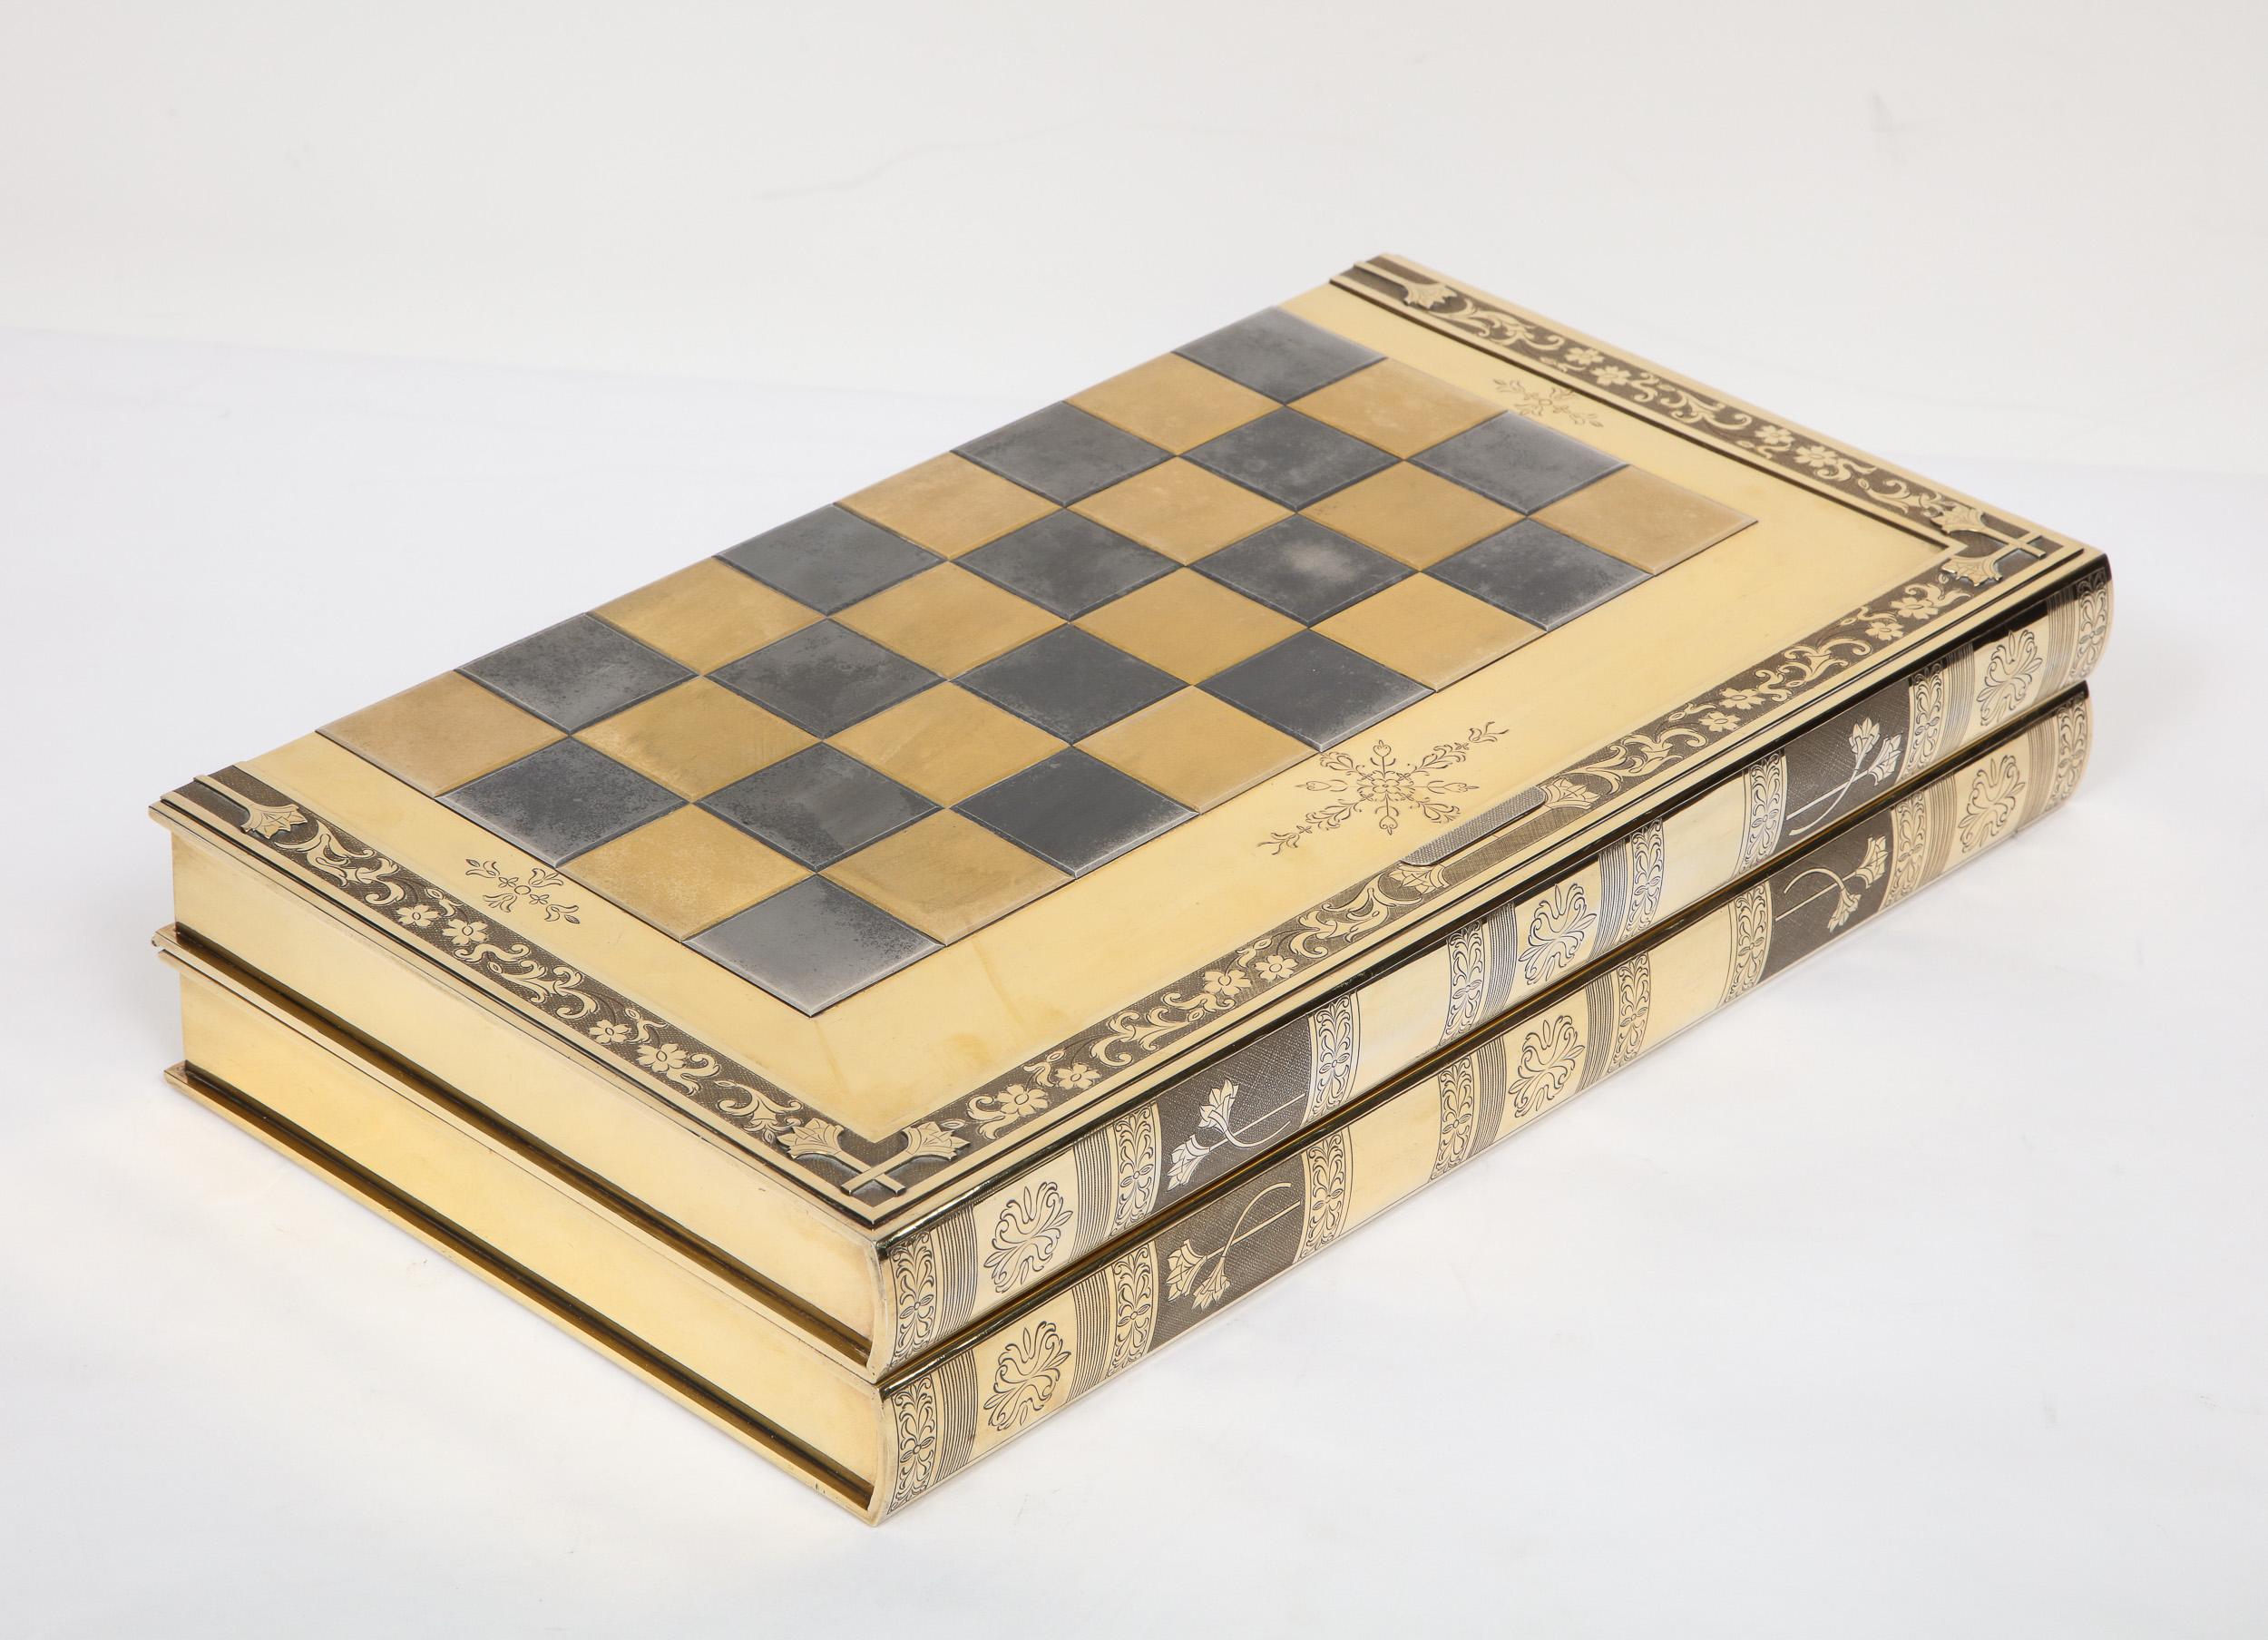 Rare English Silver-Gilt Book-Form Chess and Backgammon Game Board, circa 1976 For Sale 4